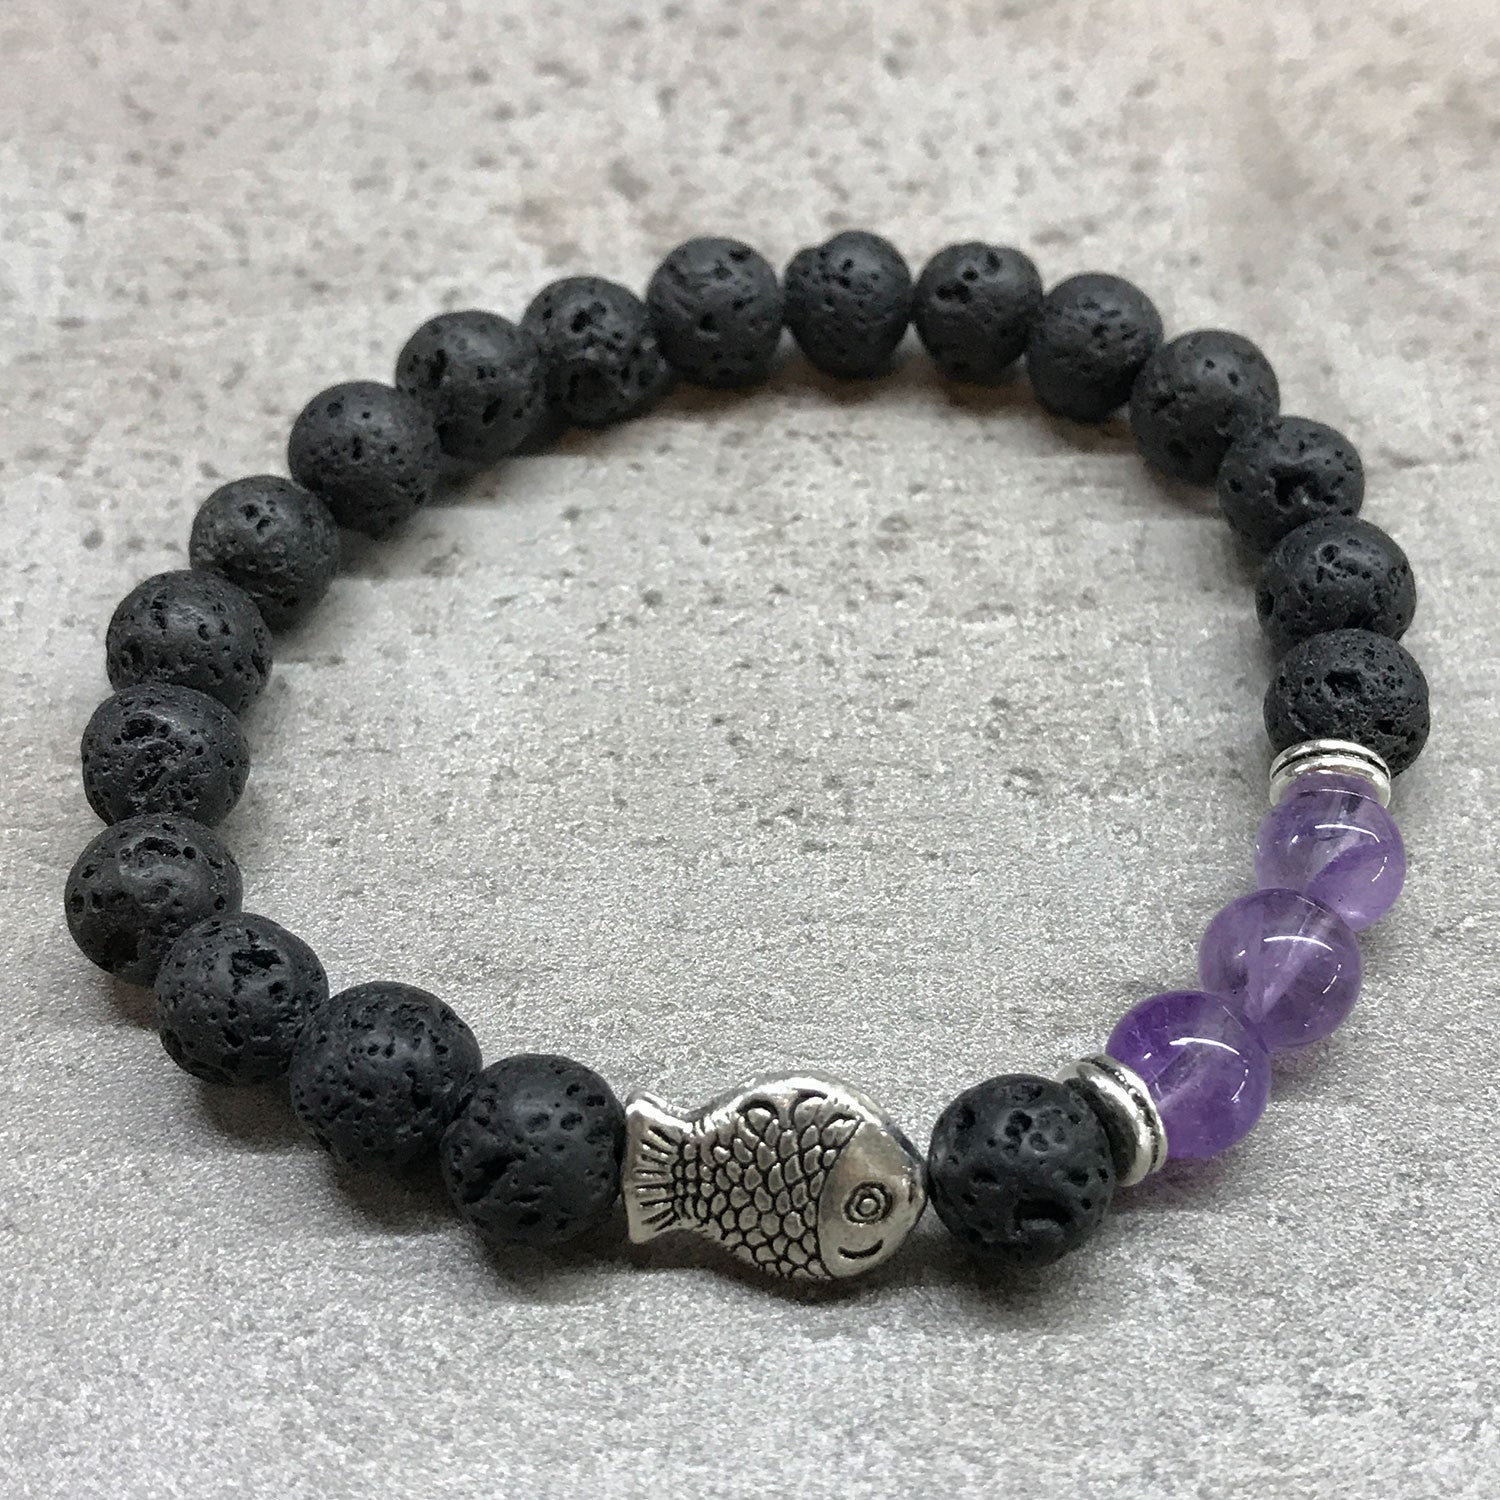 Pulsera con piedras volcánicas negras y 3 piedras de color violeta separadas por una pieza metálica en forma de pez